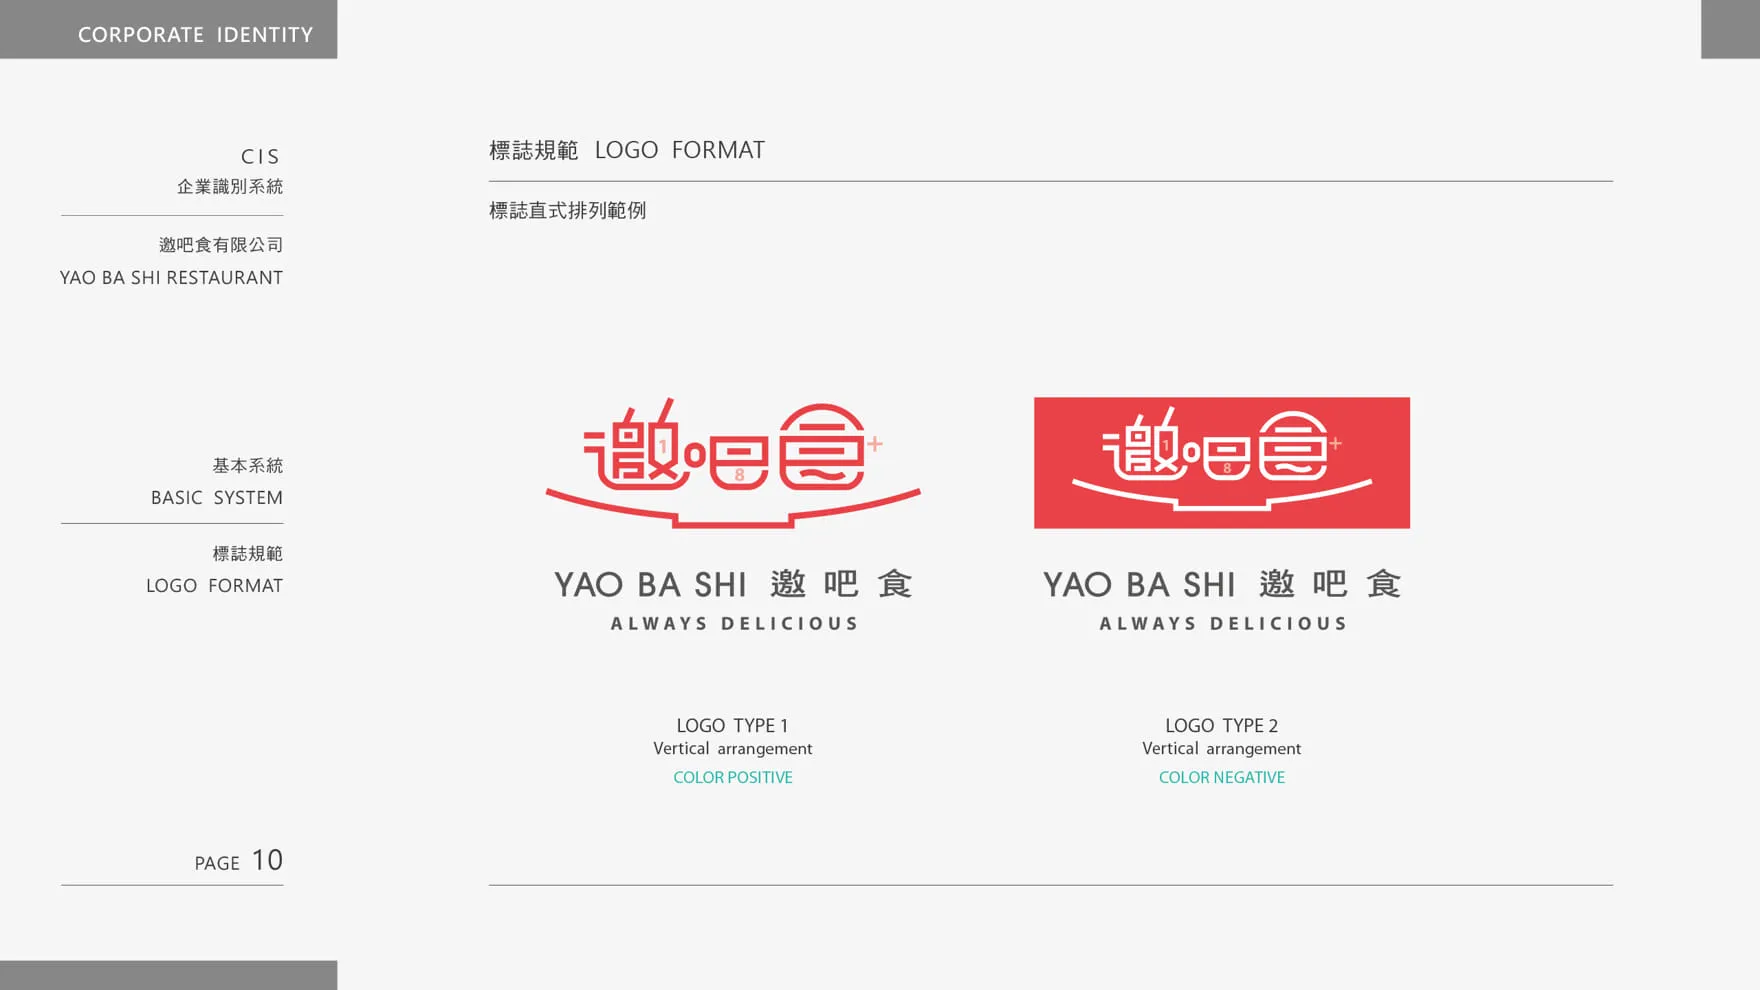 邀吧食 YAO BA SHI 品牌LOGO直式排列範例